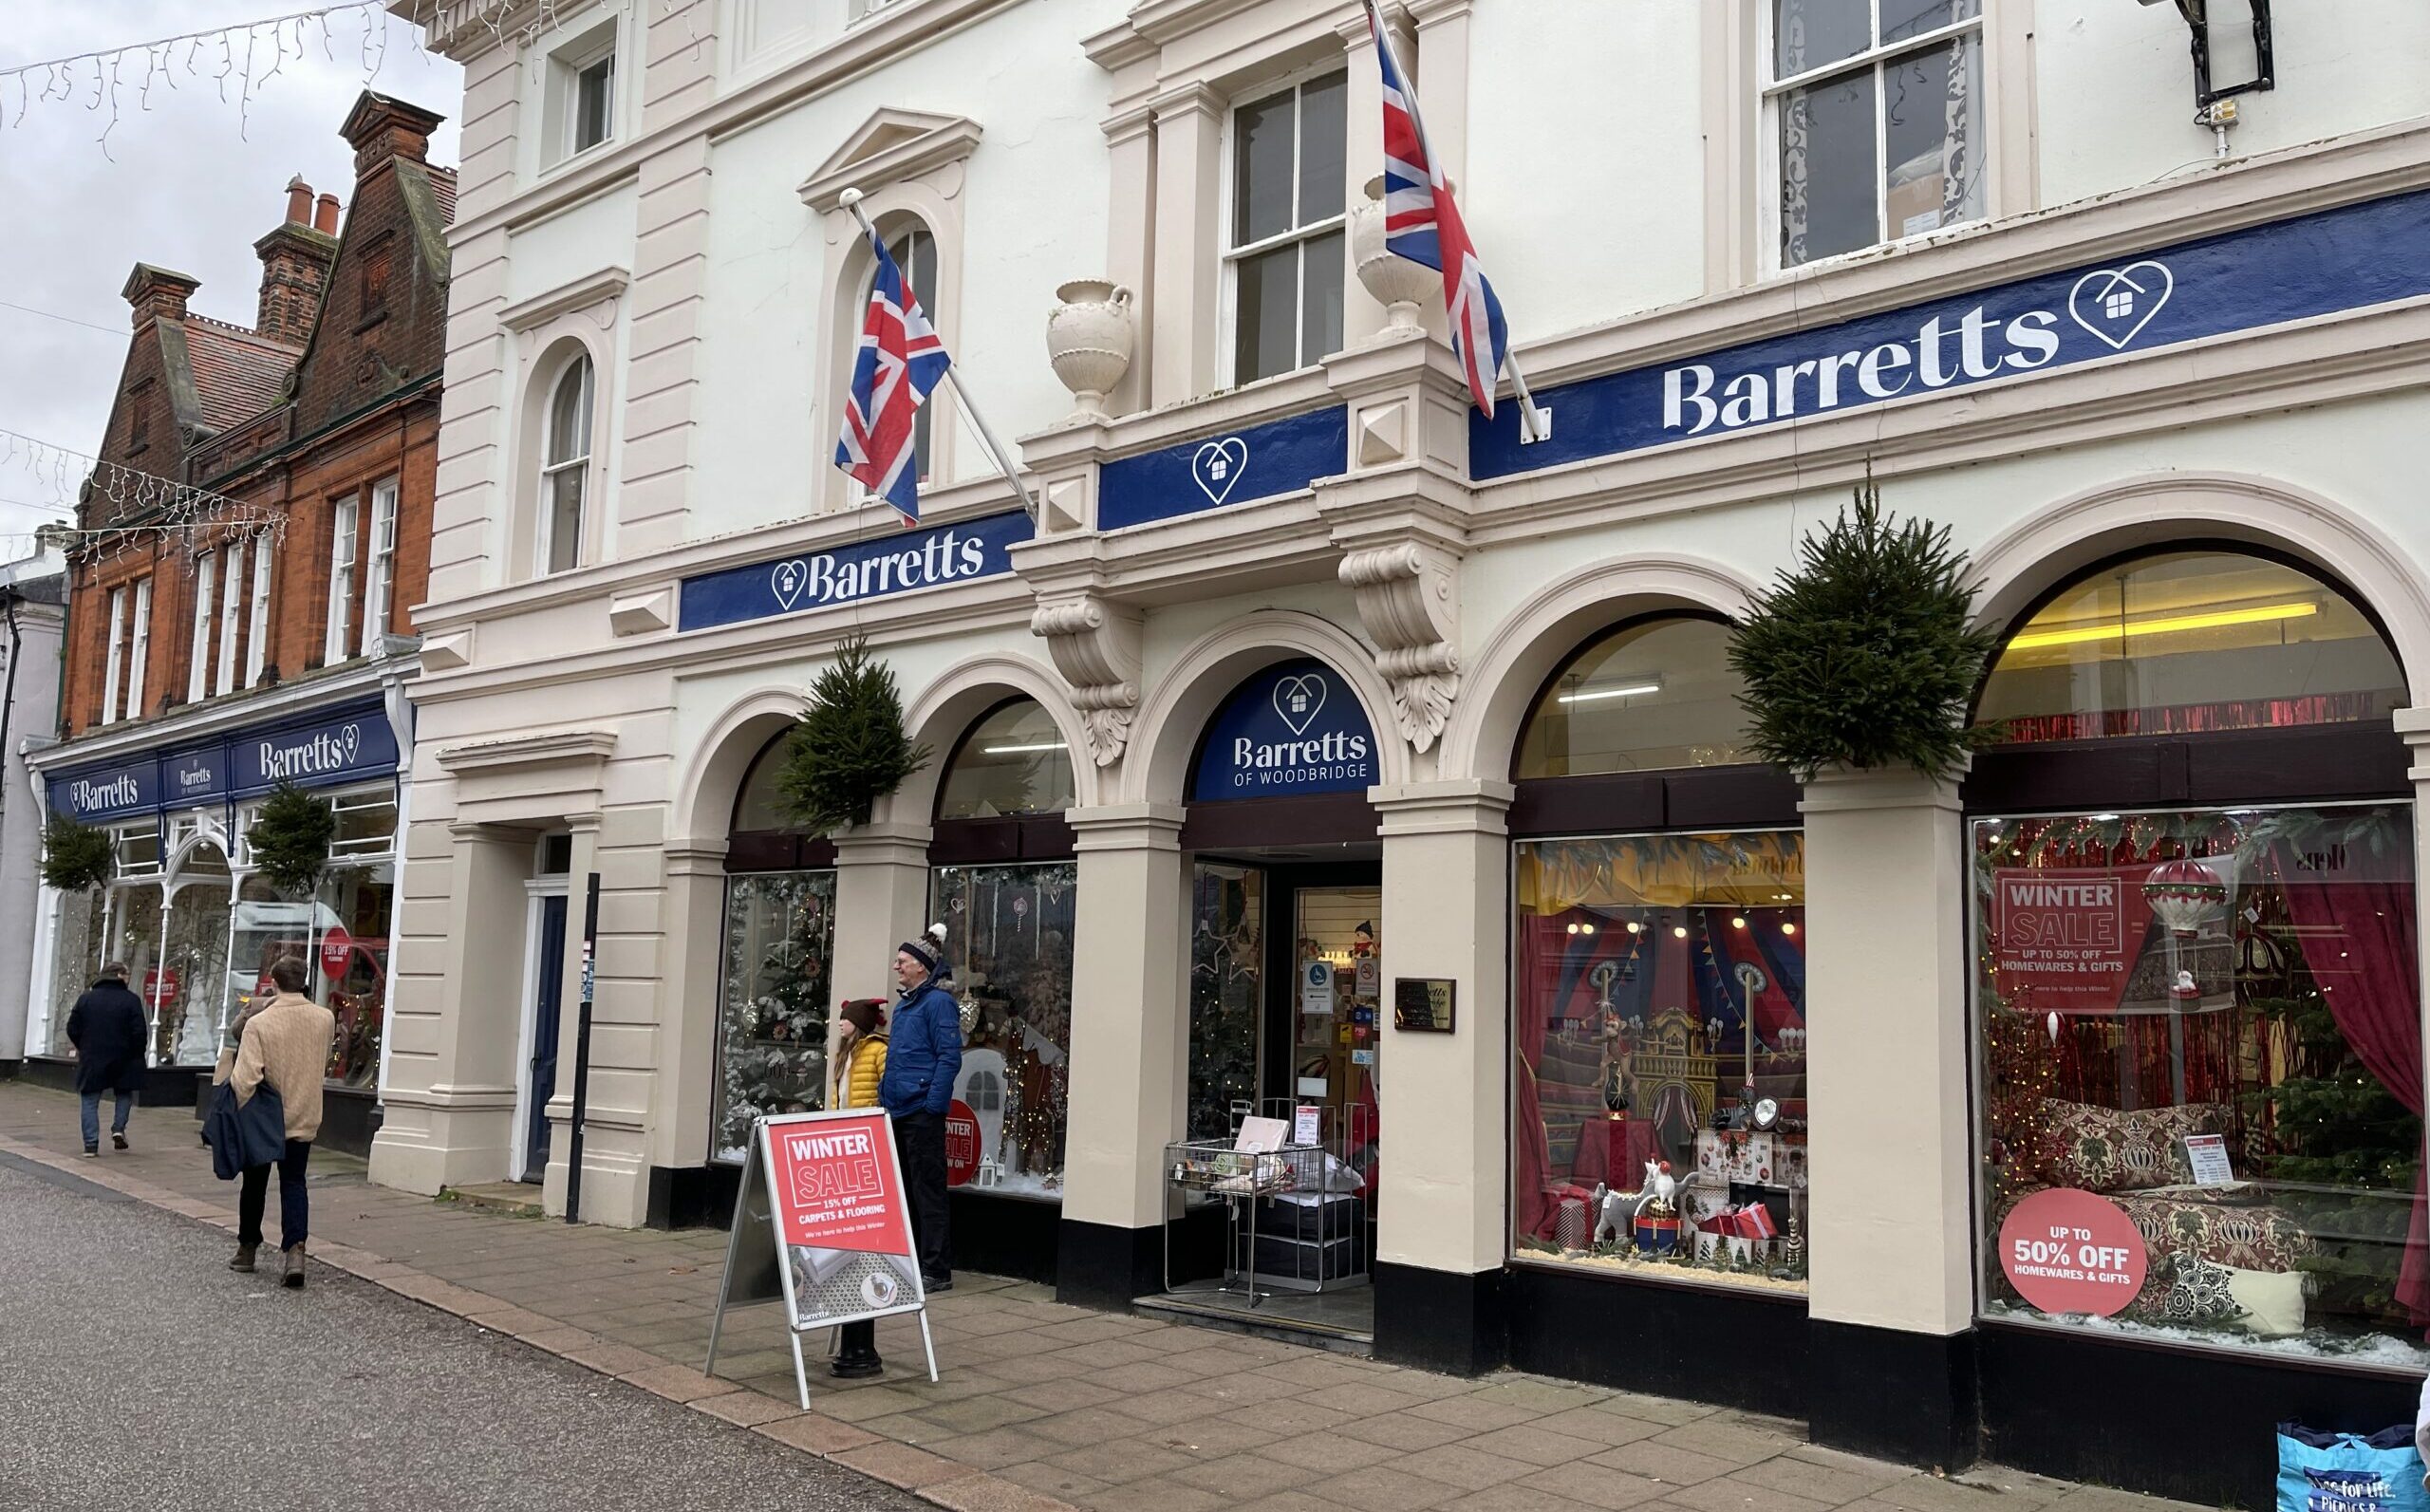 Barretts store